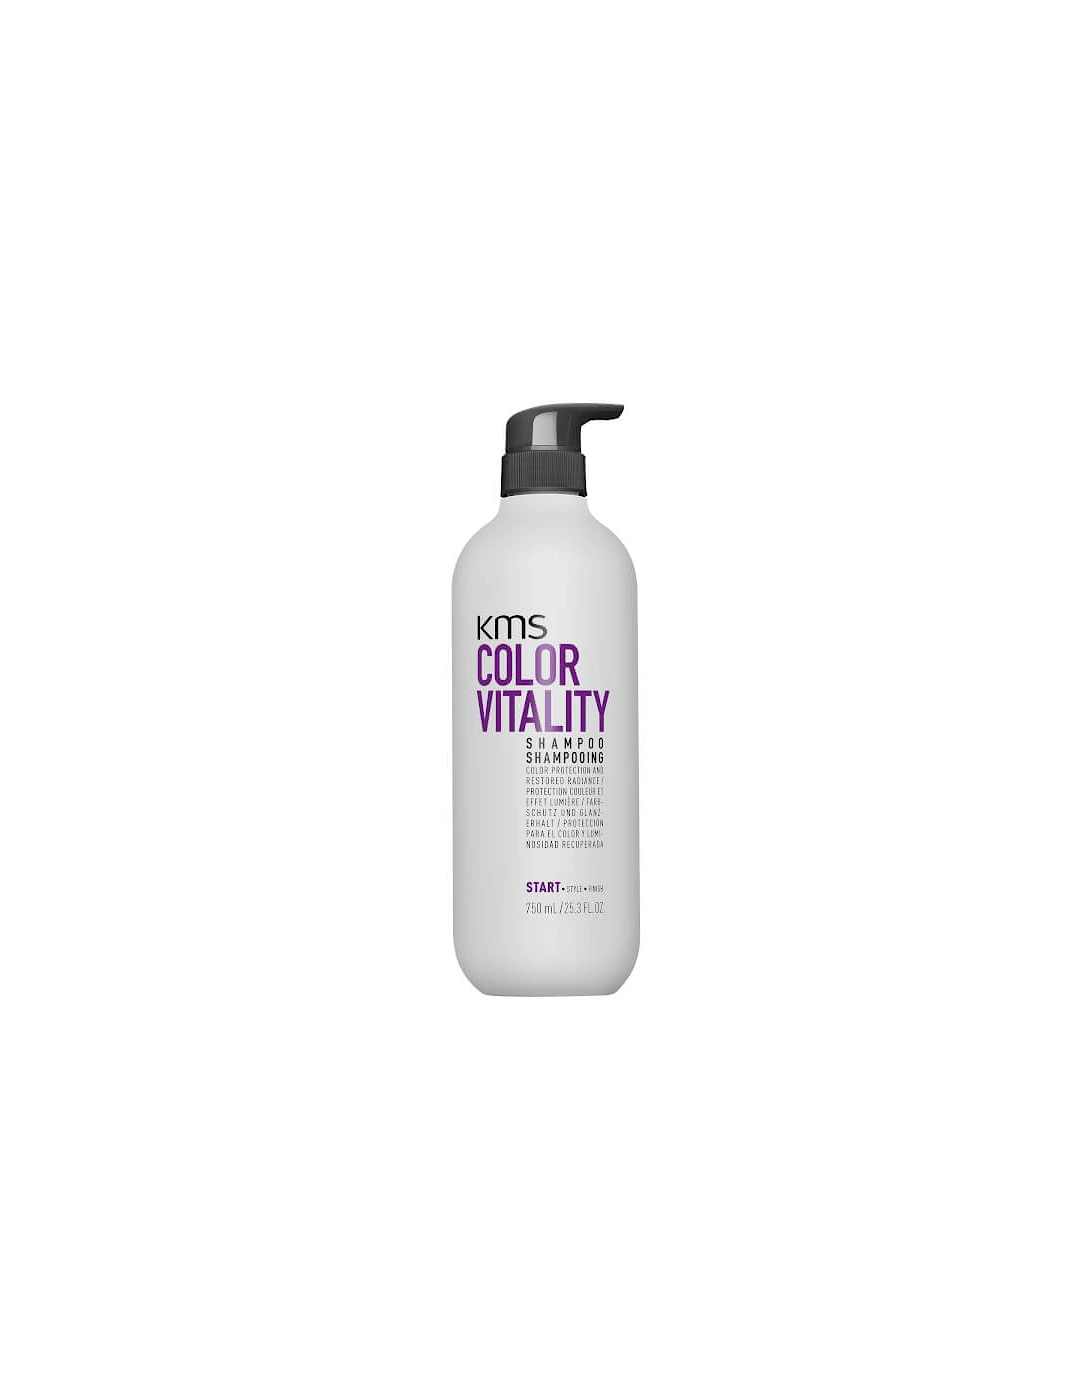 Colour Vitality Shampoo 750ml - KMS, 2 of 1